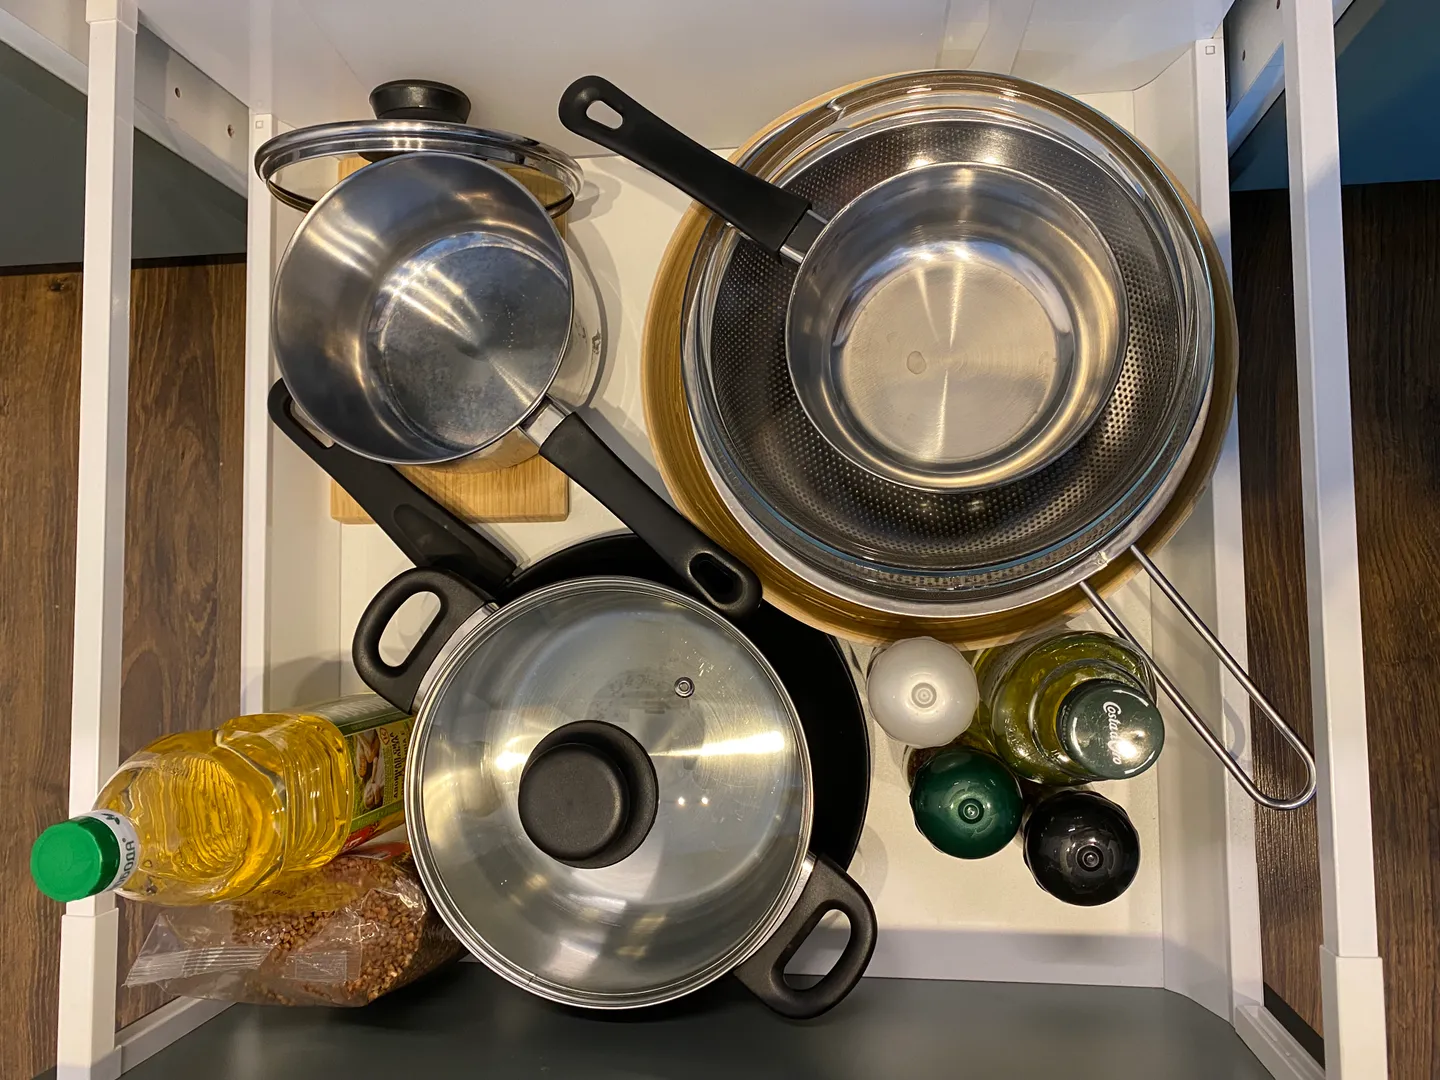 Всё необходимое есть на кухне: соль, перец масло, кастрюли и сковородки